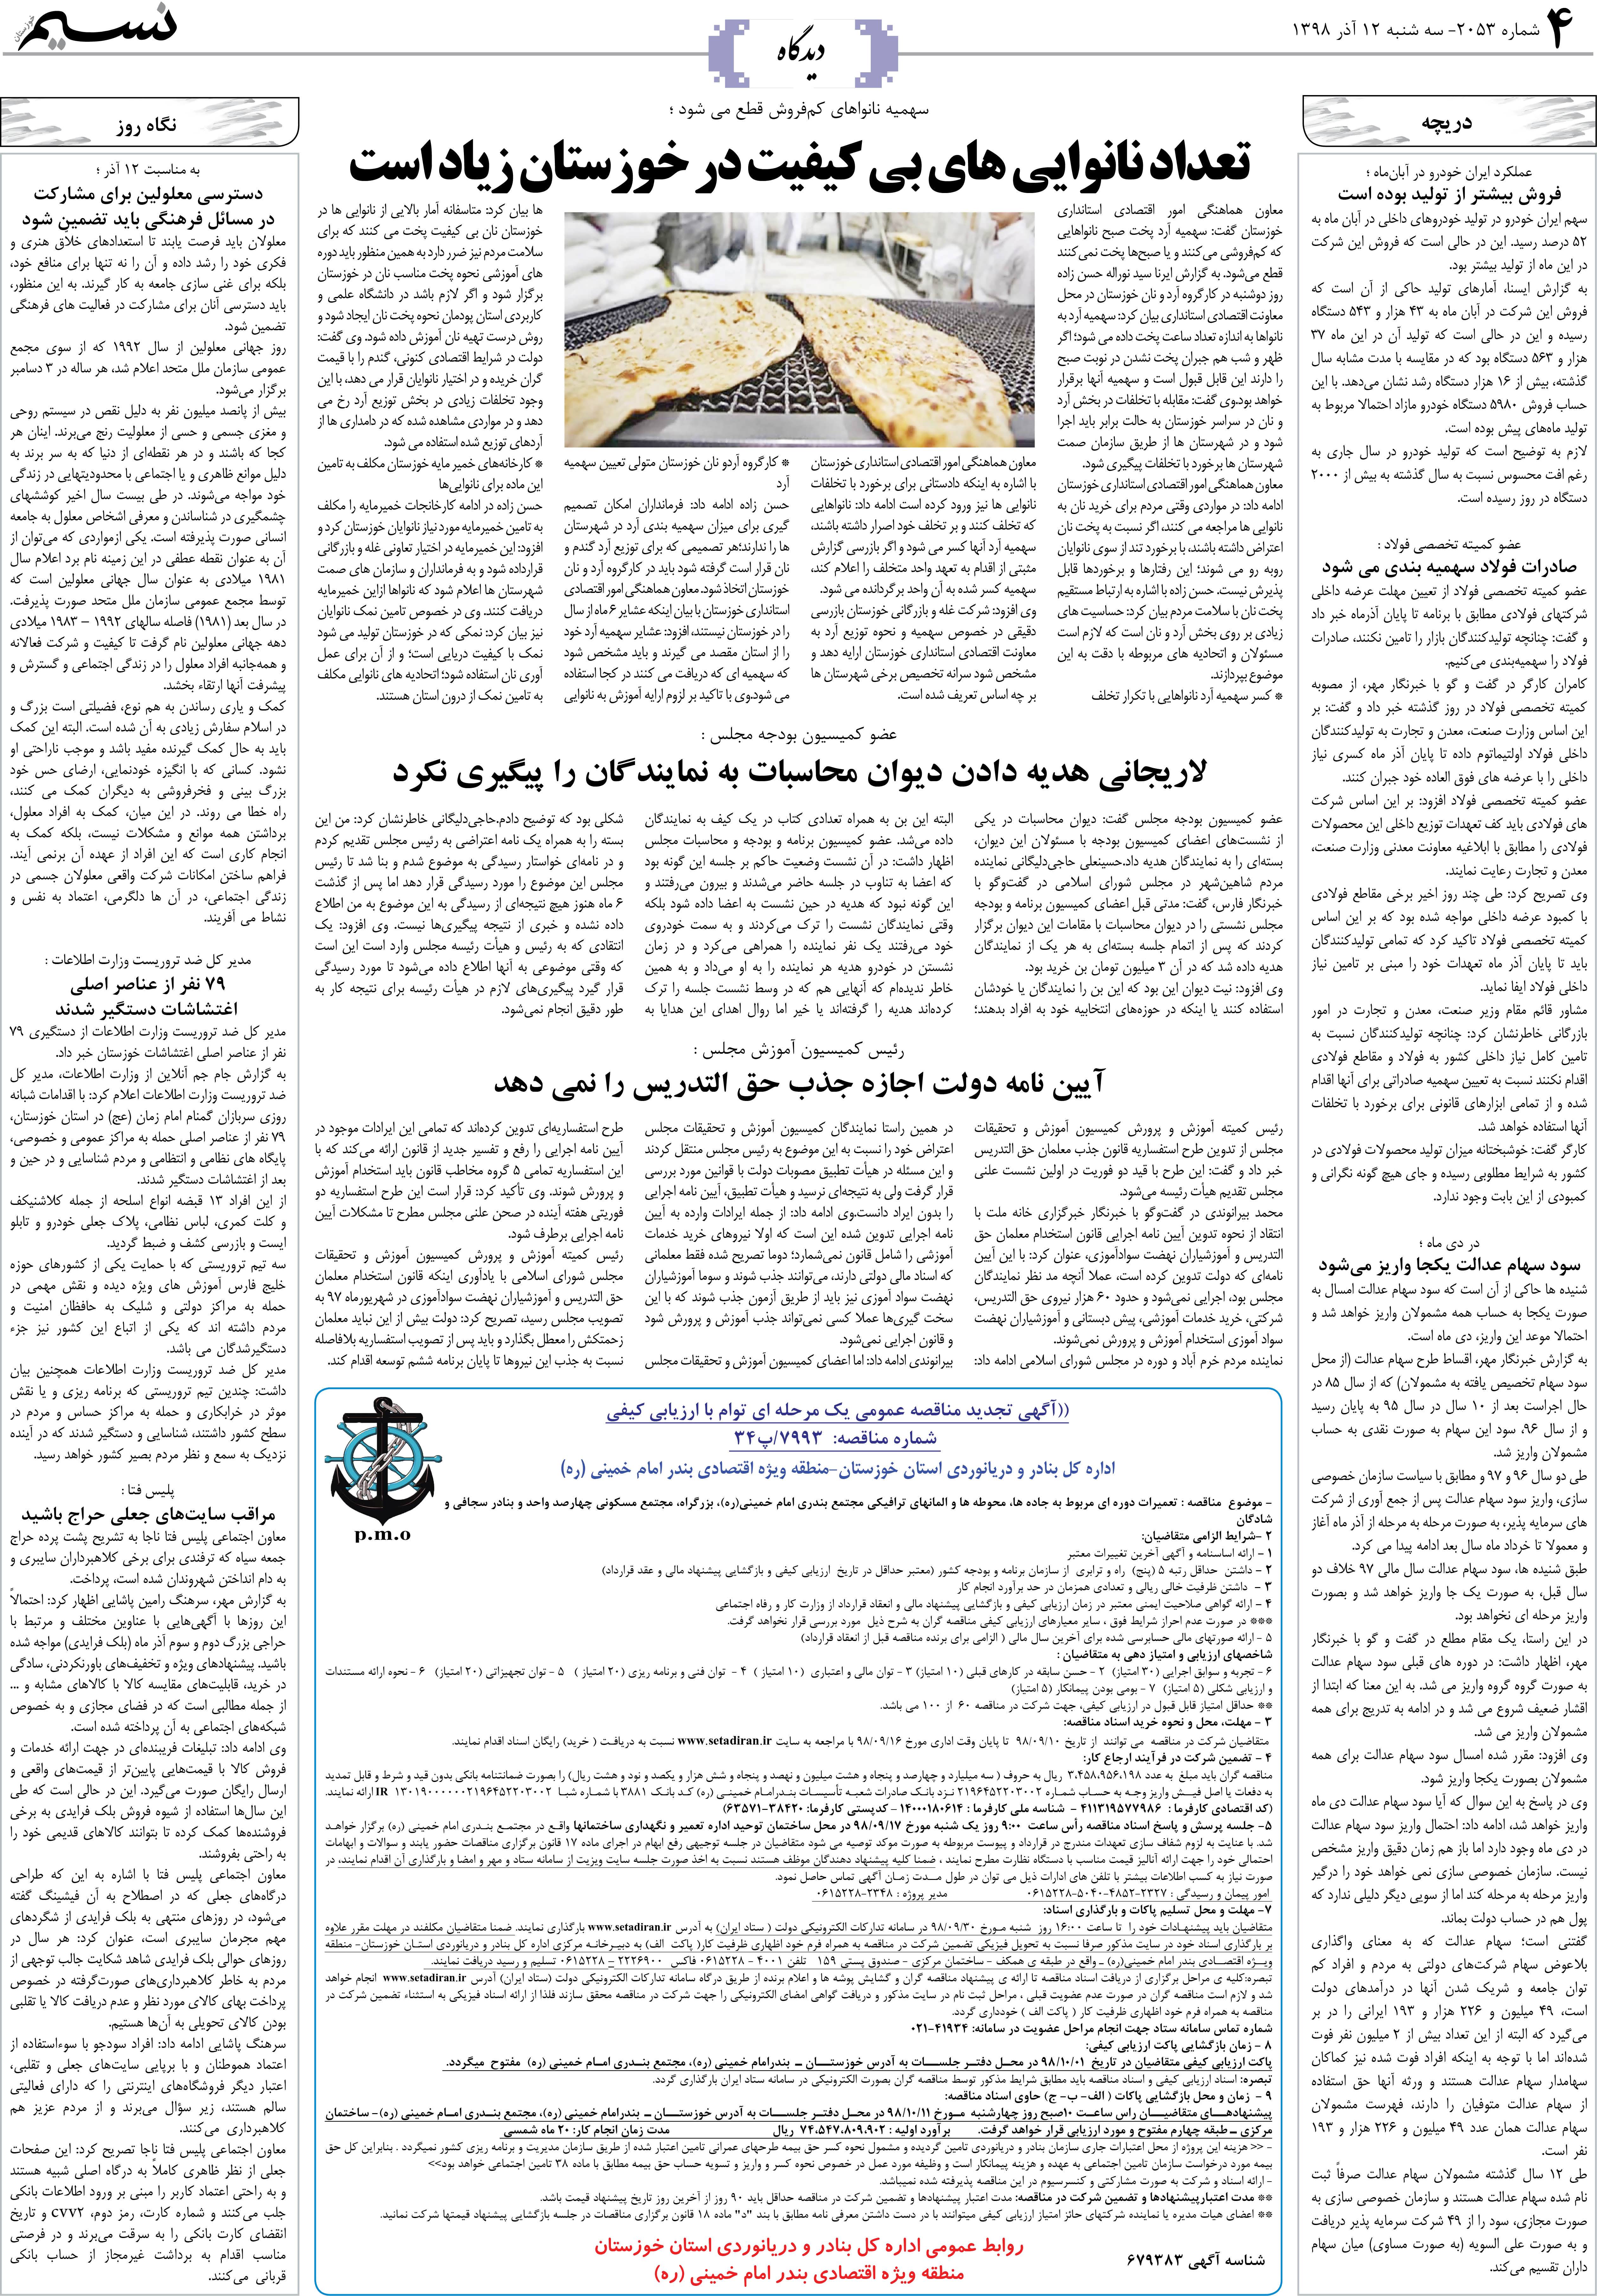 صفحه دیدگاه روزنامه نسیم شماره 2053